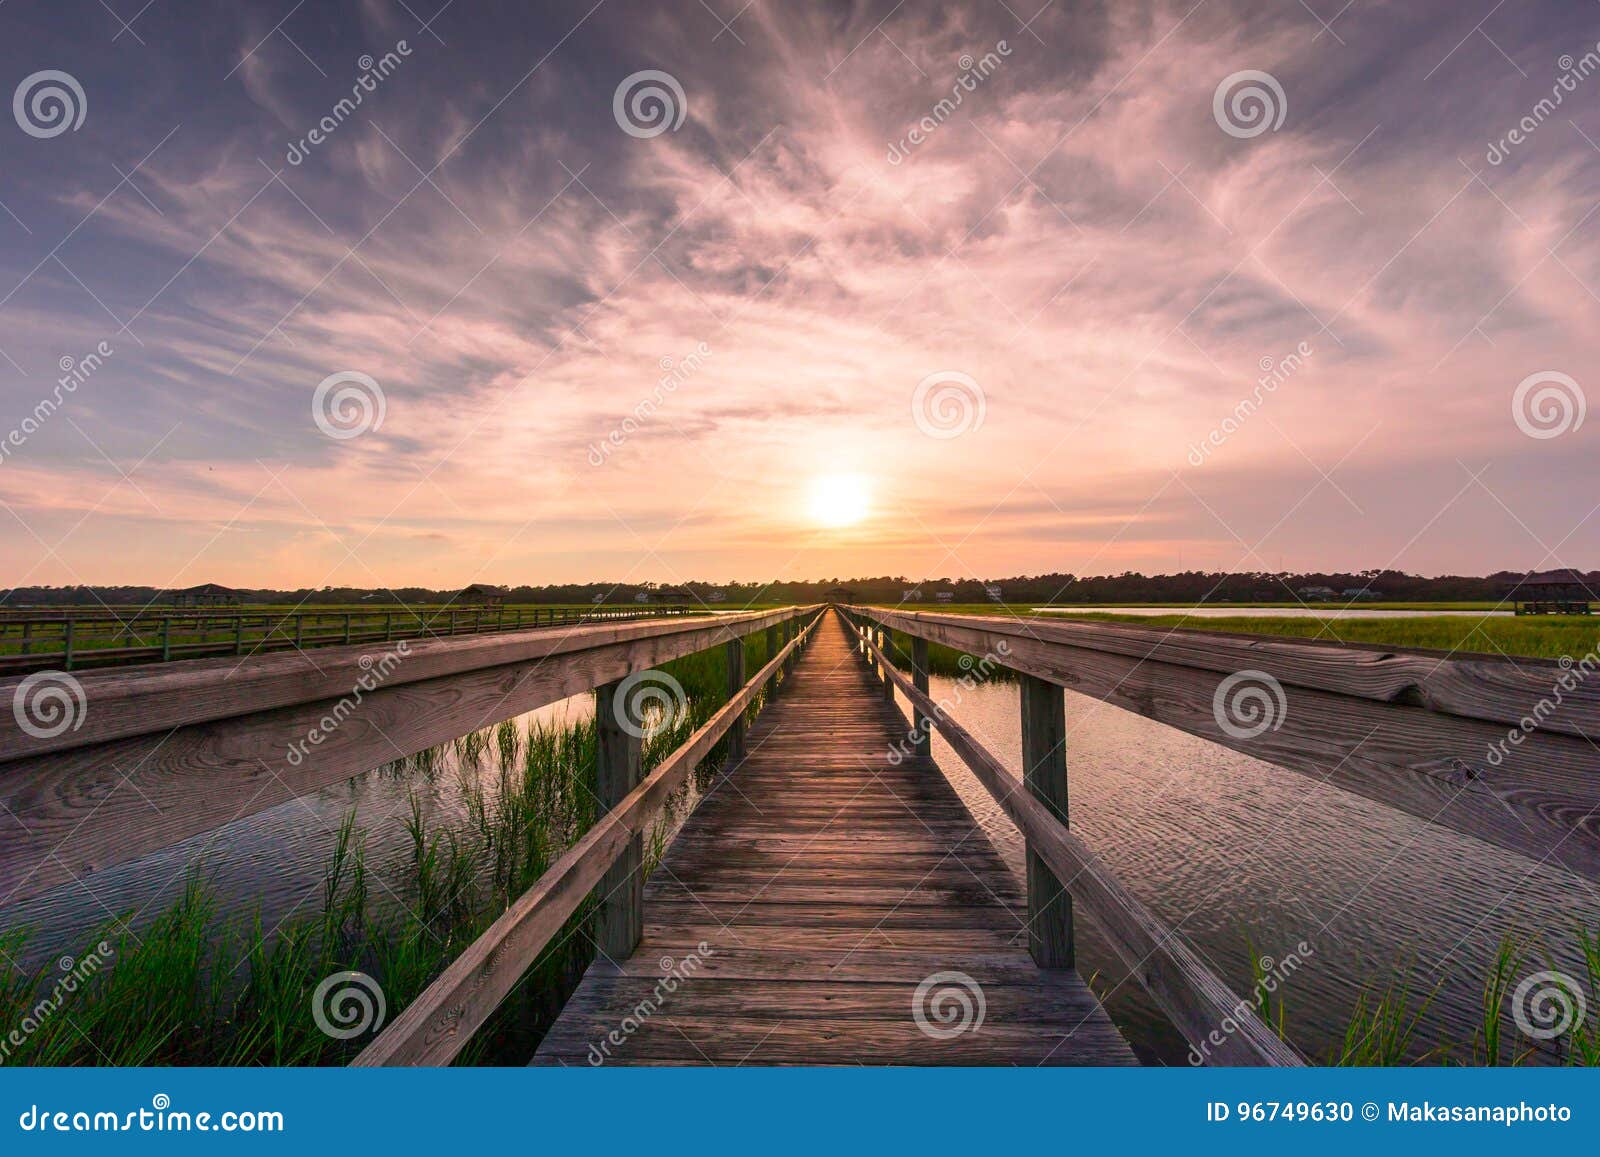 boardwalk over salt marsh at sunset